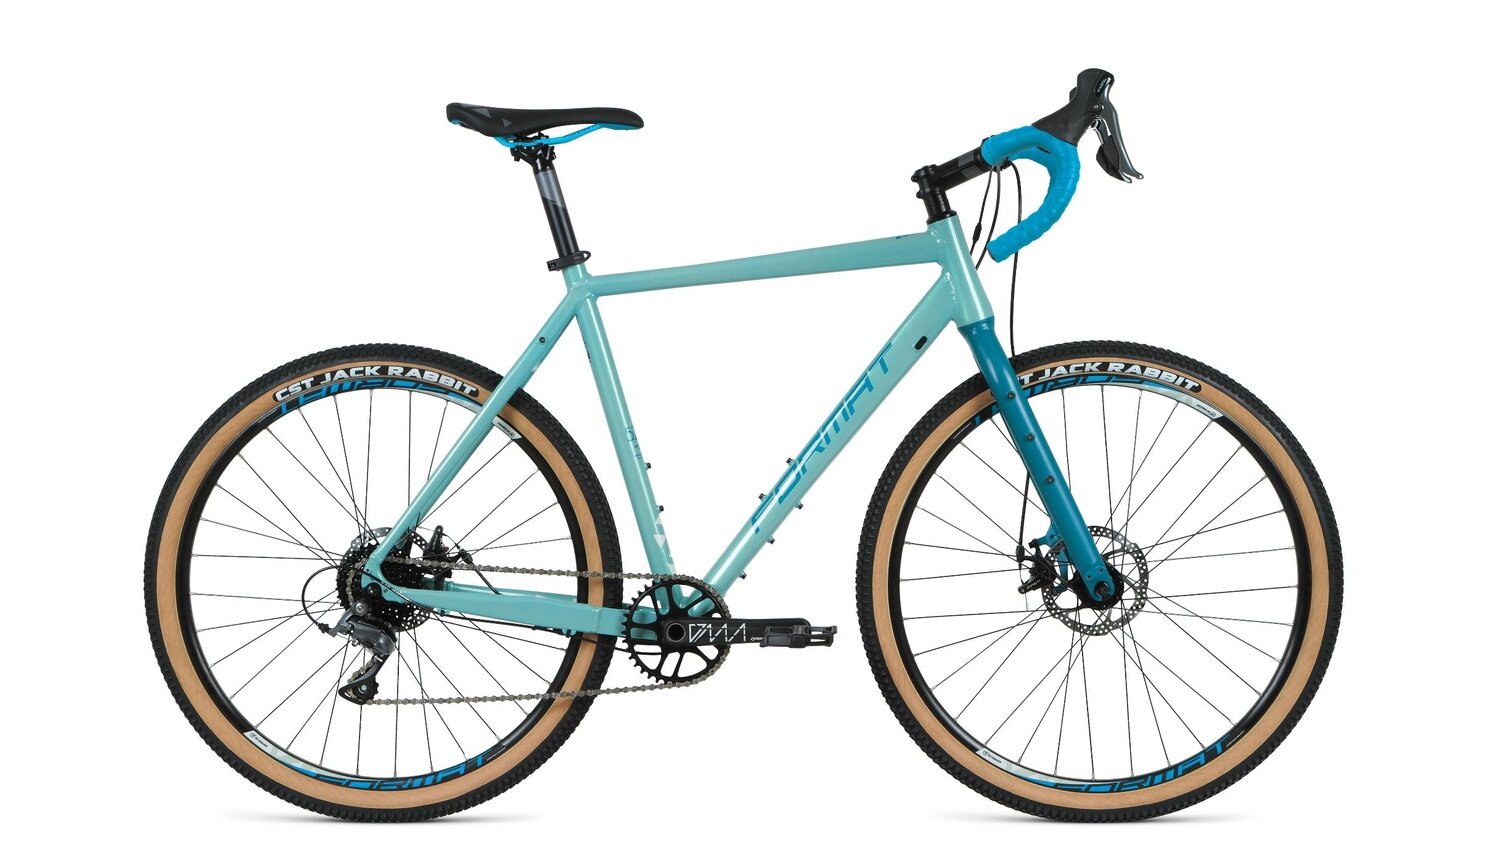 Шоссейный велосипед Format 5221 27.5, год 2021, цвет Голубой, ростовка 21.5